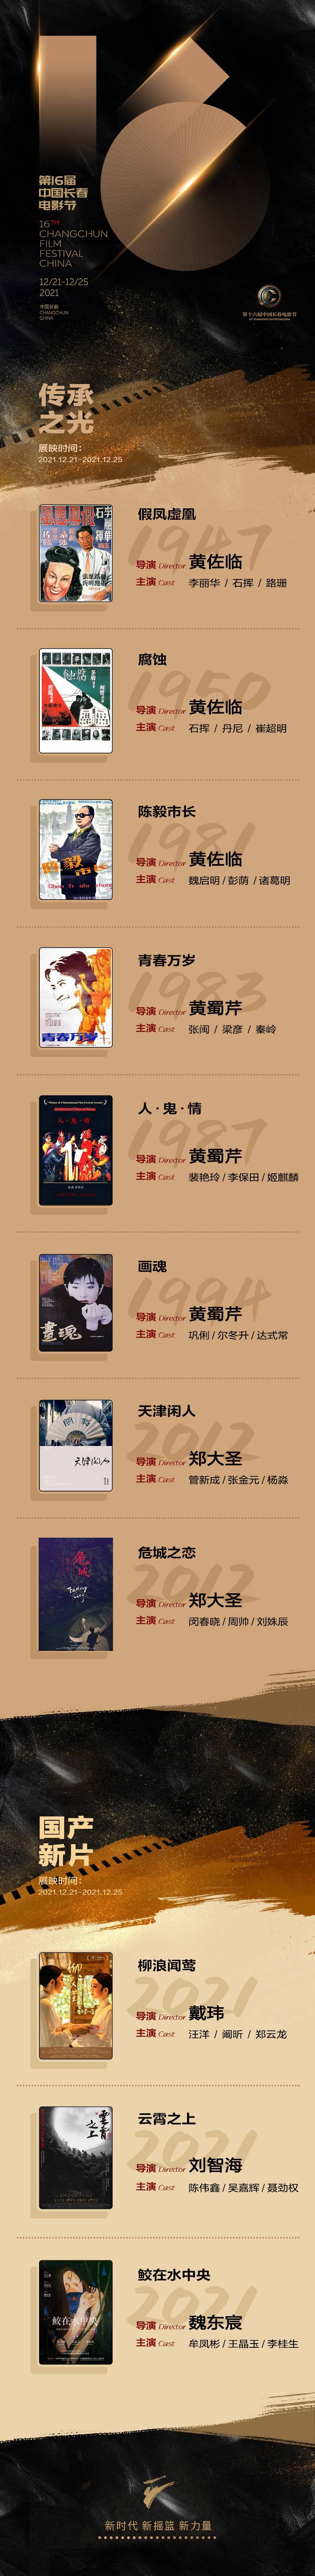 第16届中国长春电影节公布片单 共设8个主题展映单元